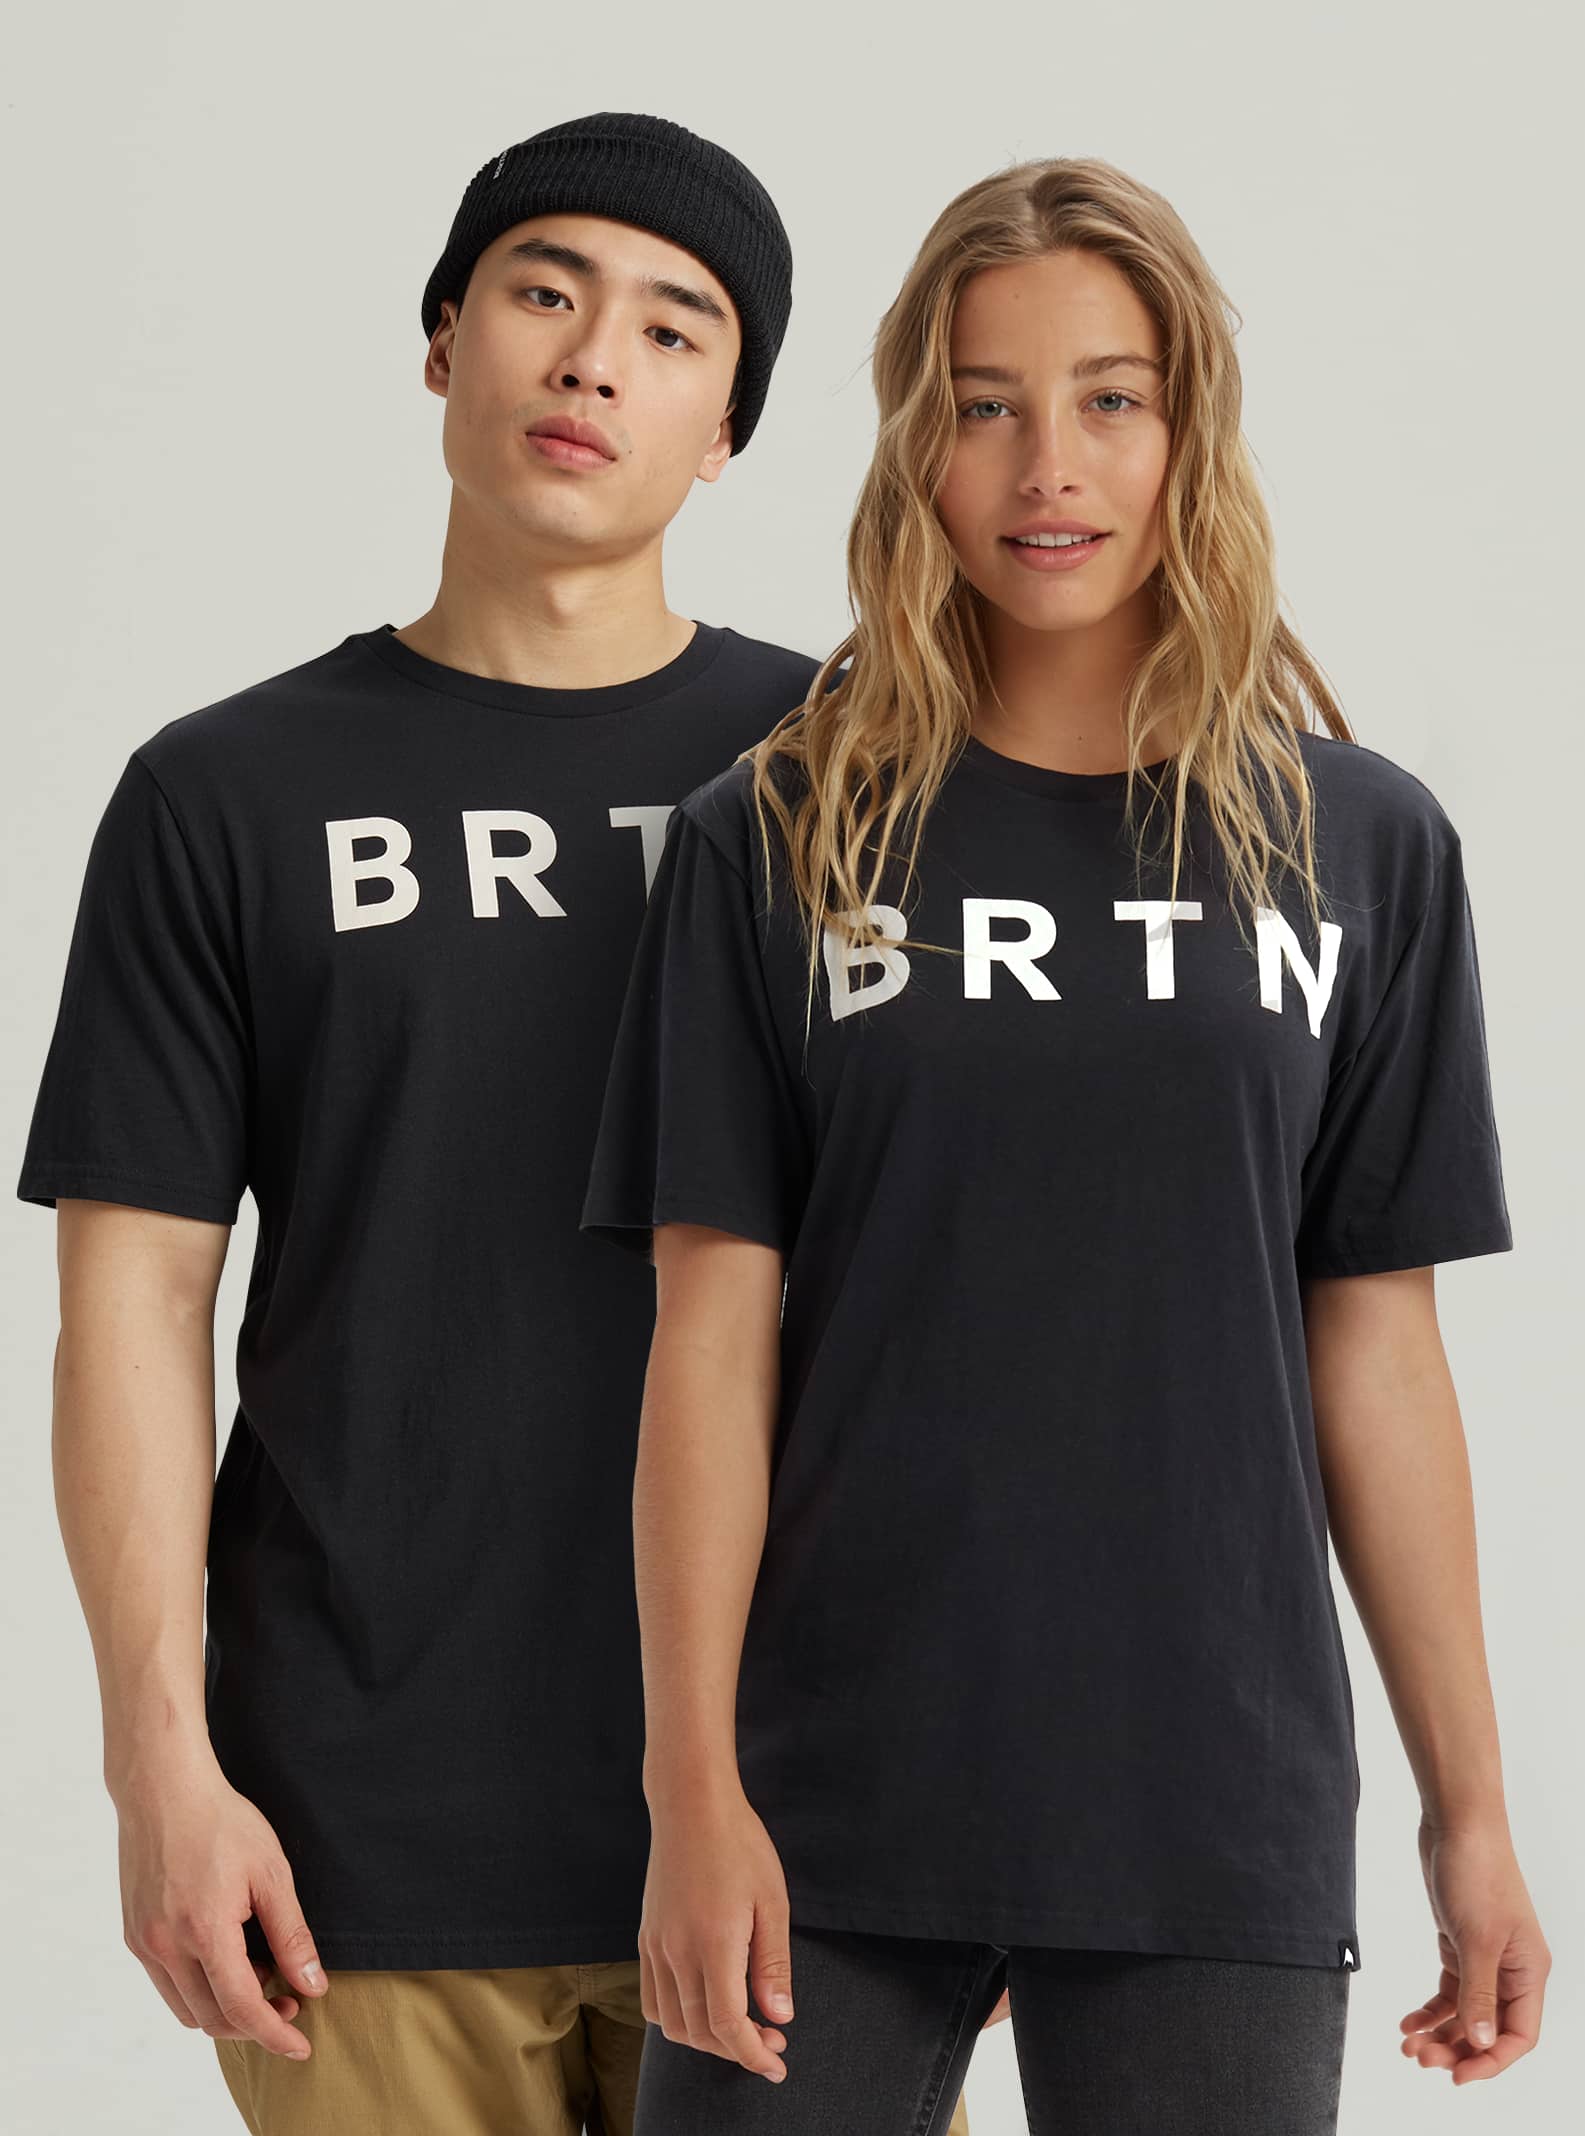 T-shirts et camisoles de Burton pour femmes | Hauts à manches courtes et  hauts à manches longues | Burton - Planches à neige CA